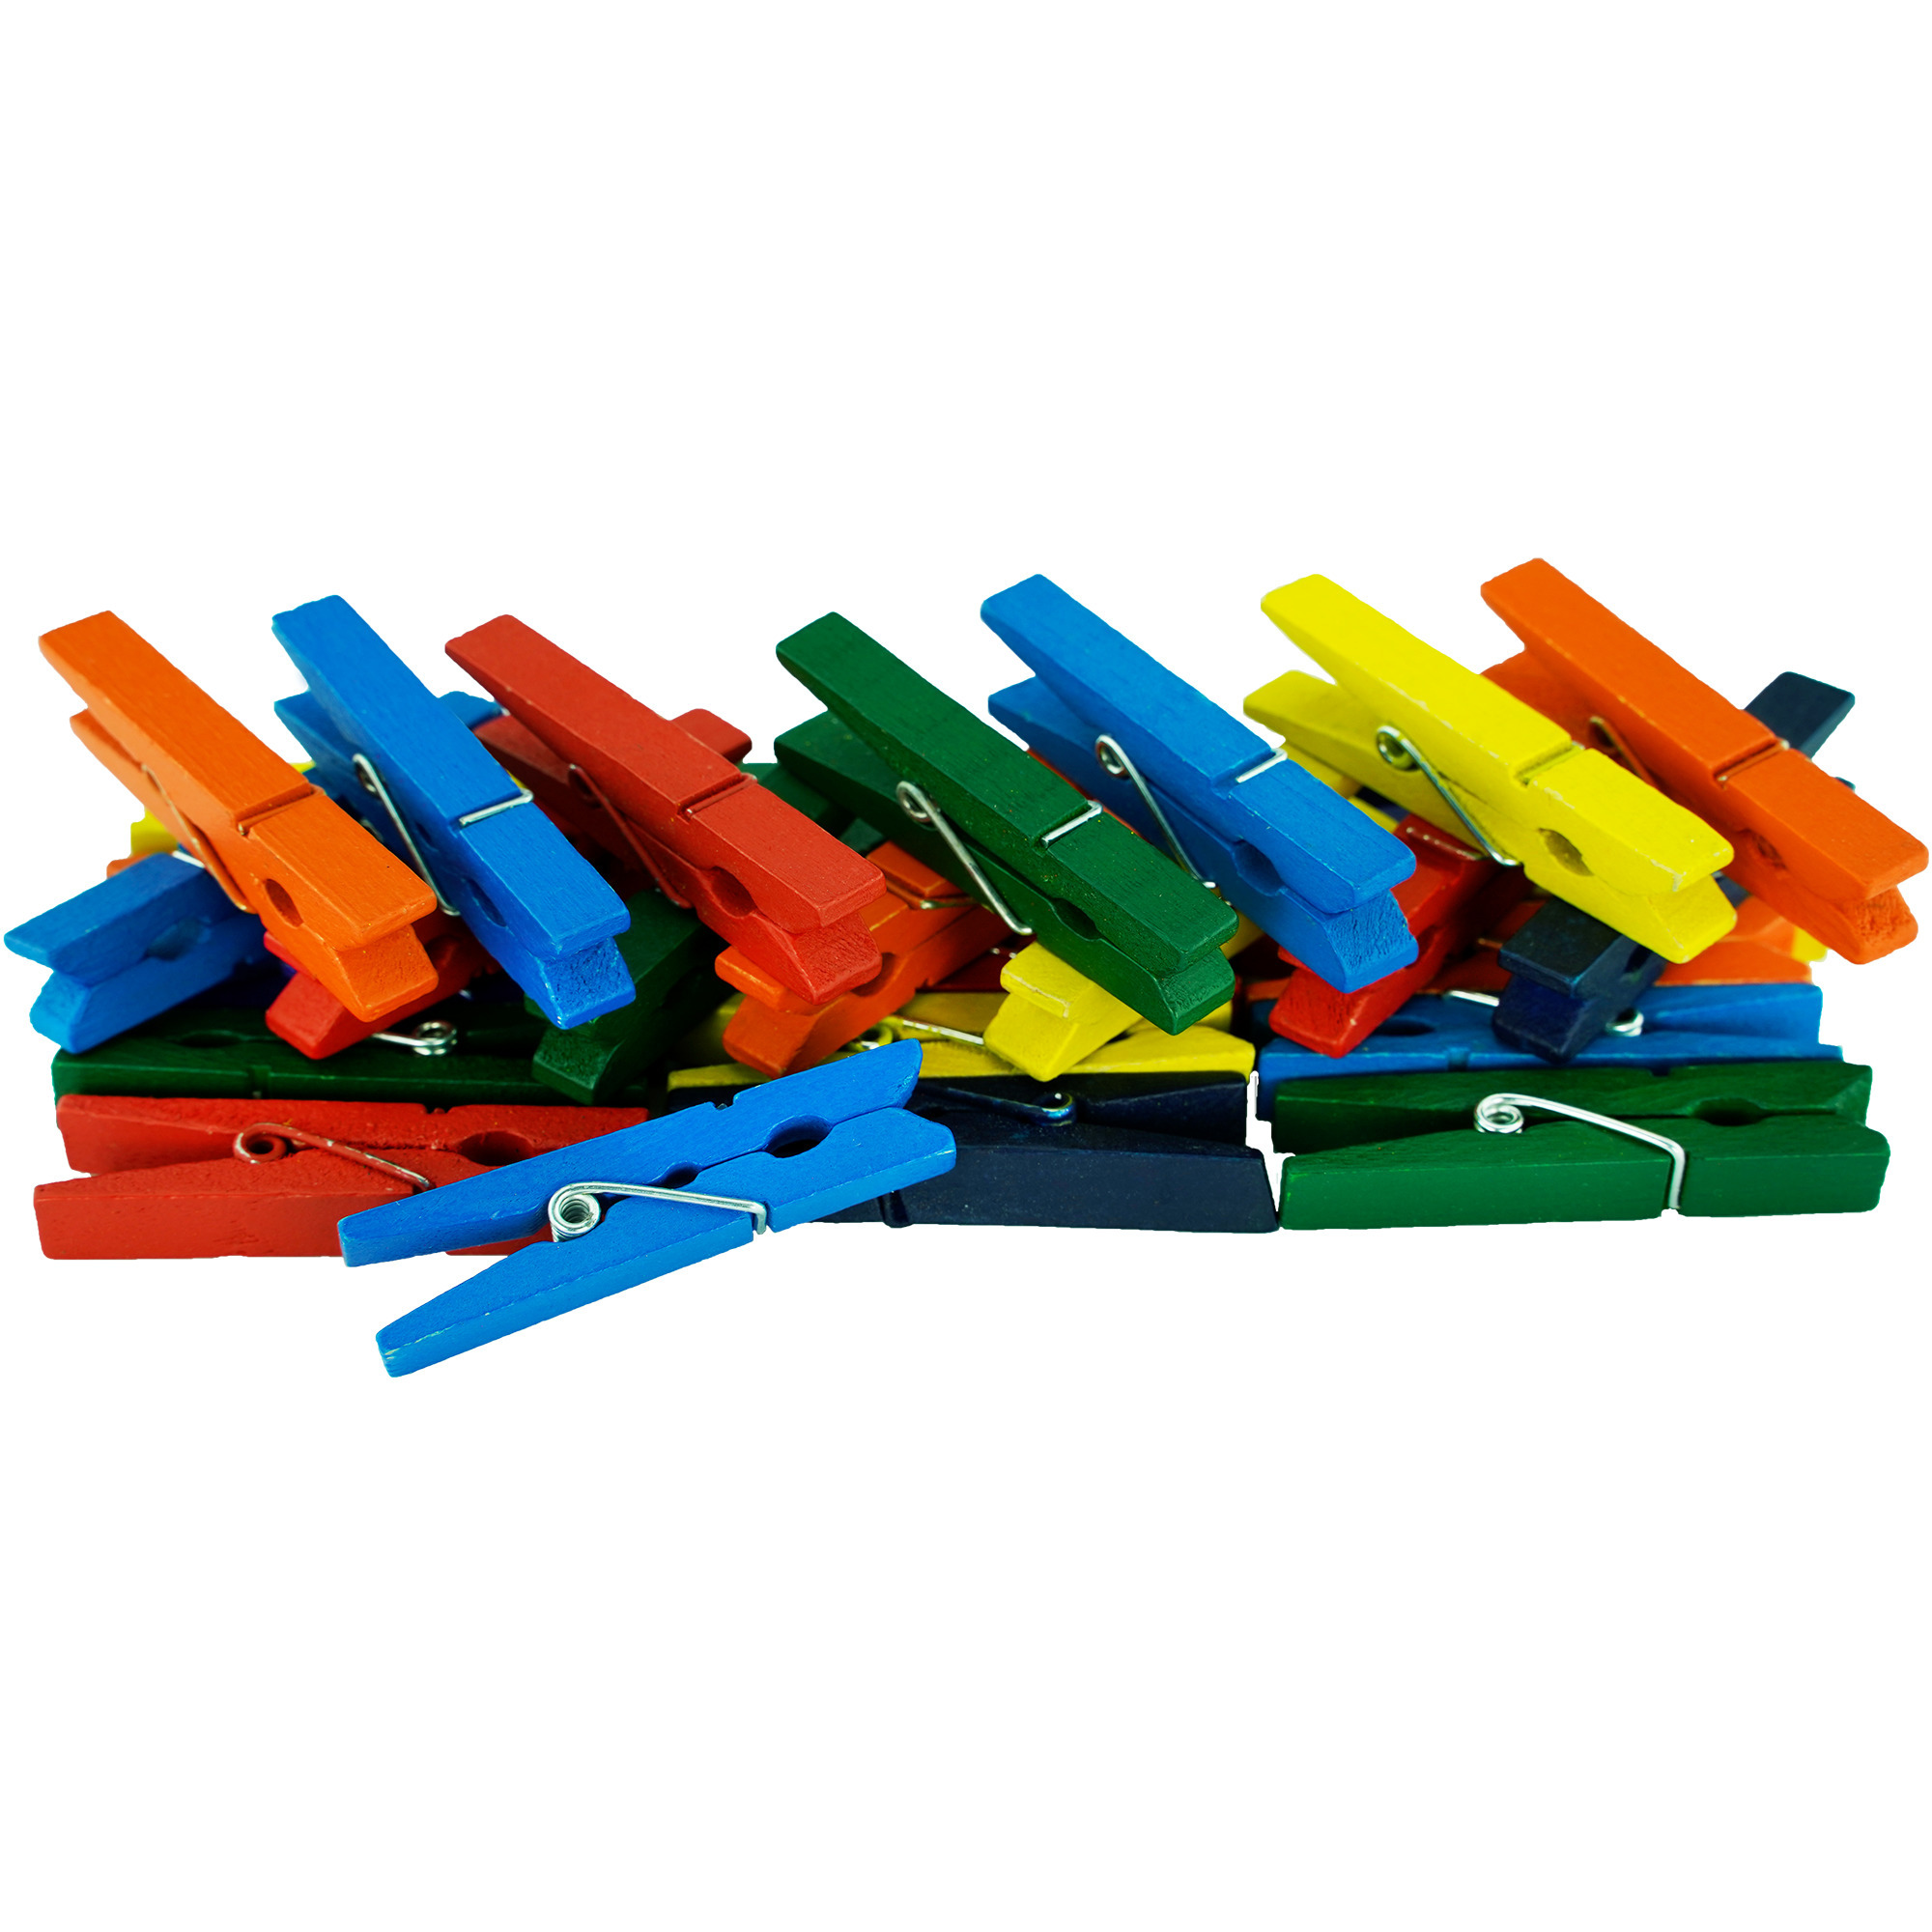 50x stuks multi-color kleur hobby knutselen mini knijpers-knijpertjes 4.5 cm